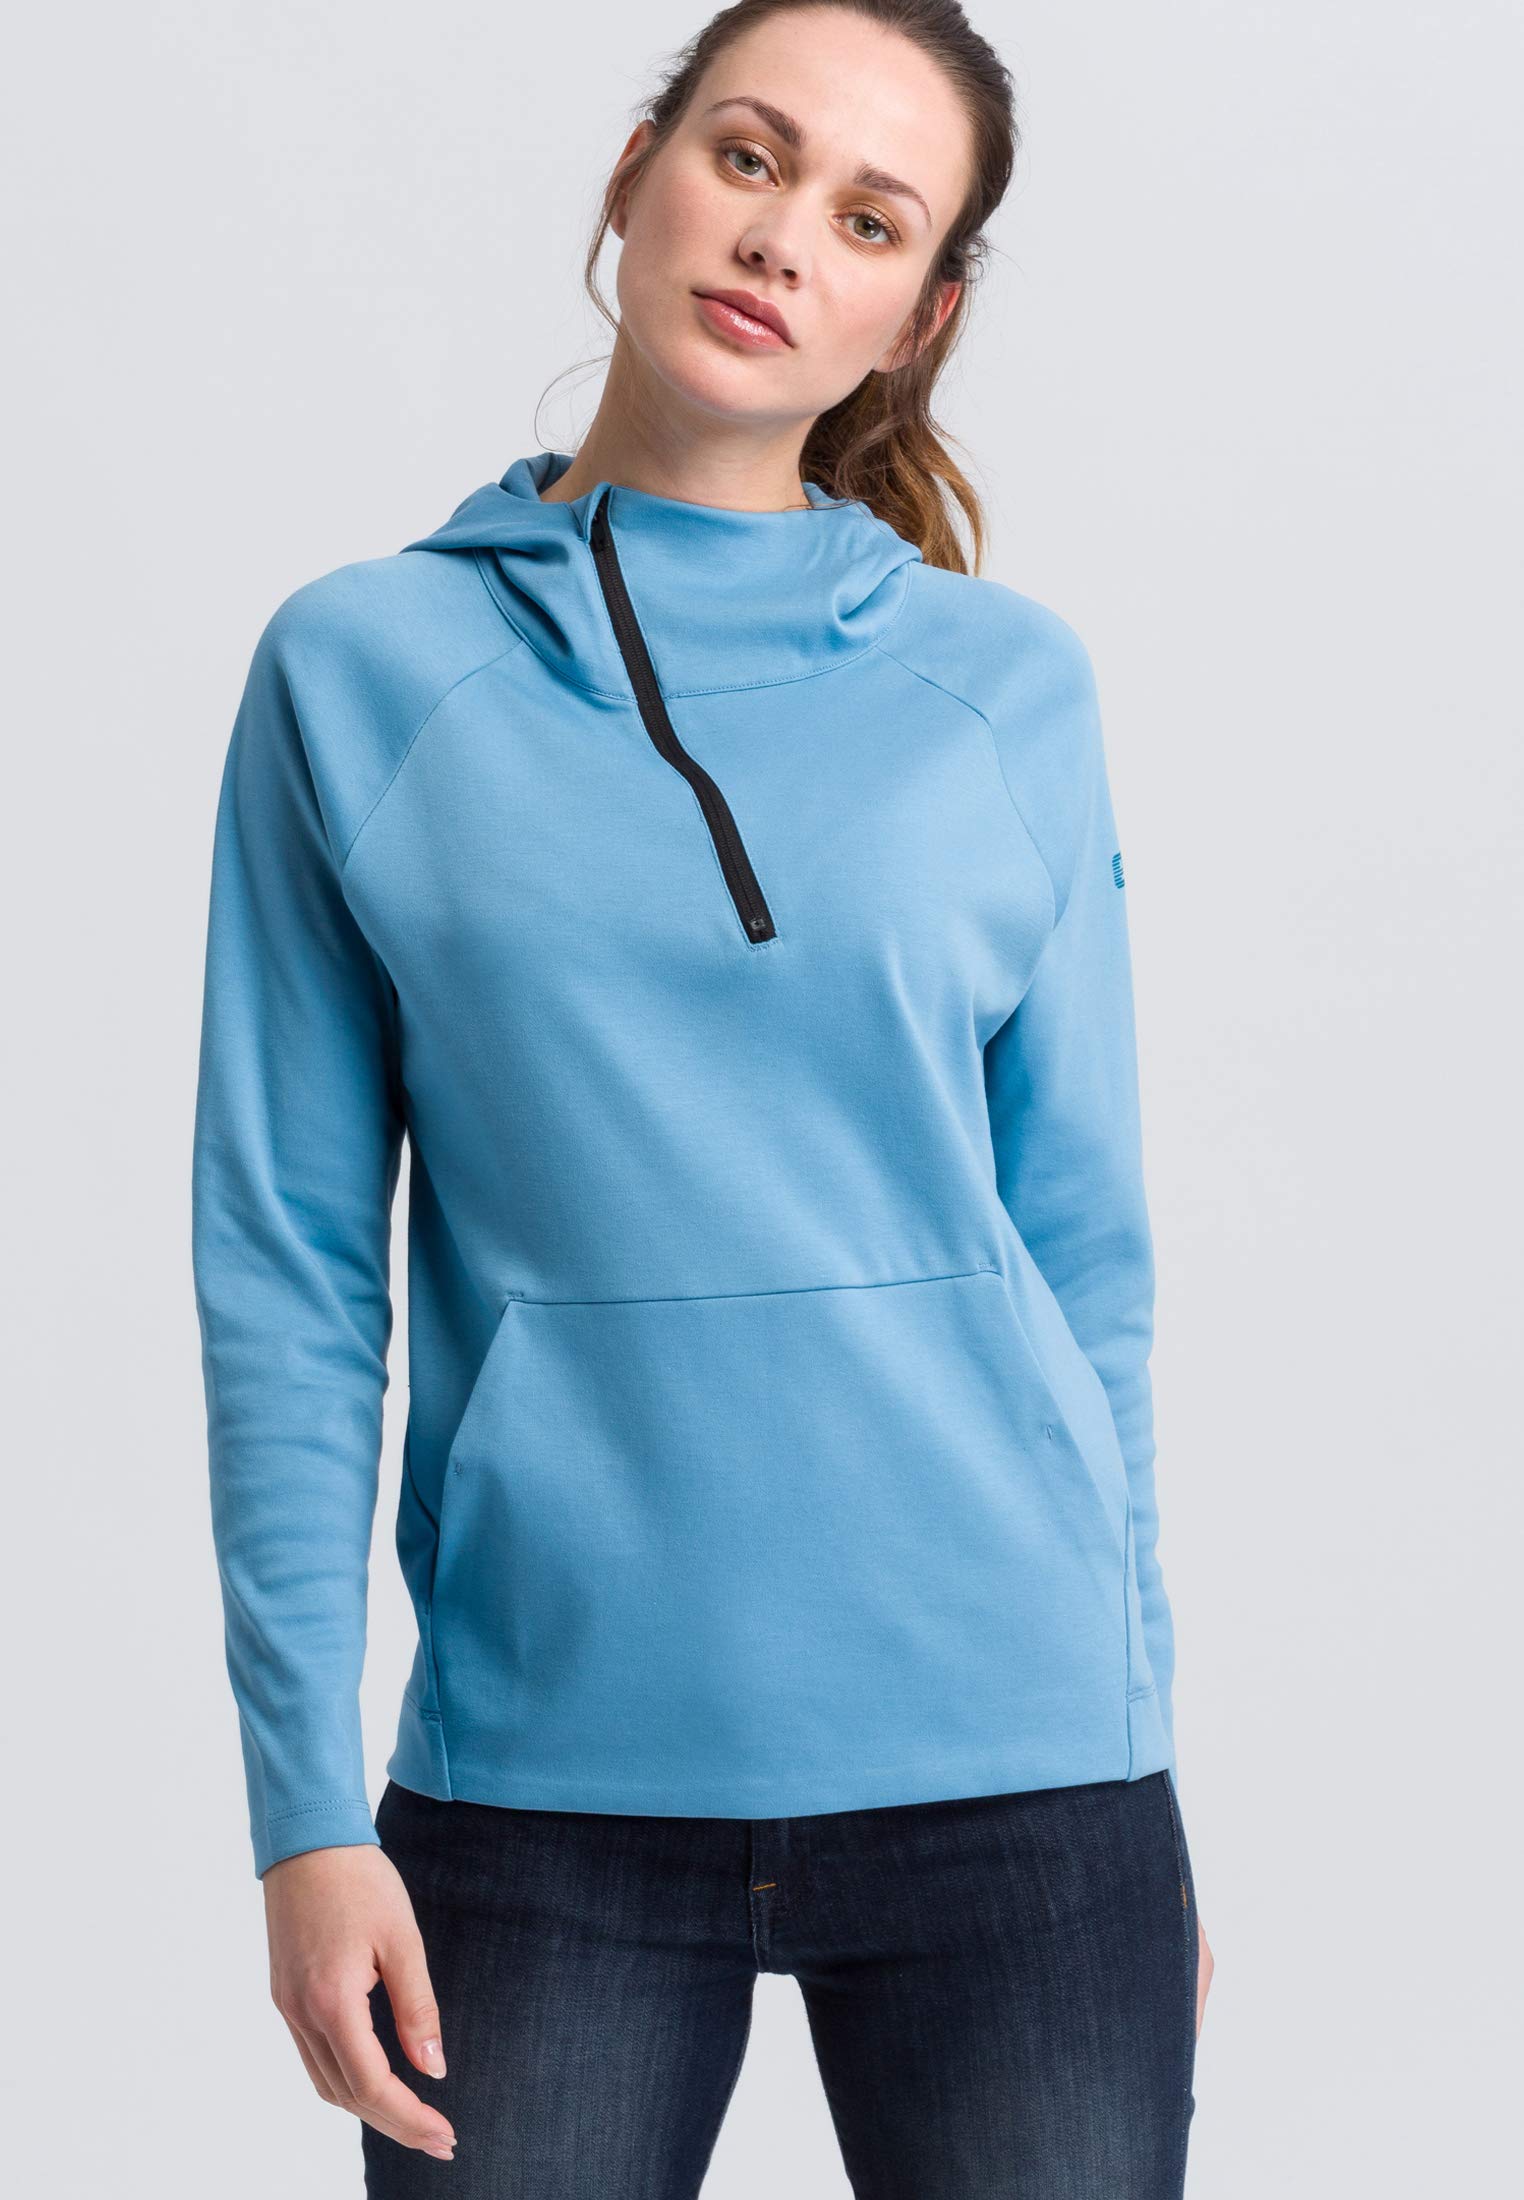 ERIMA Damen Sweatshirt Essential Kapuzensweat, niagara/ink blue, 36, 2071826